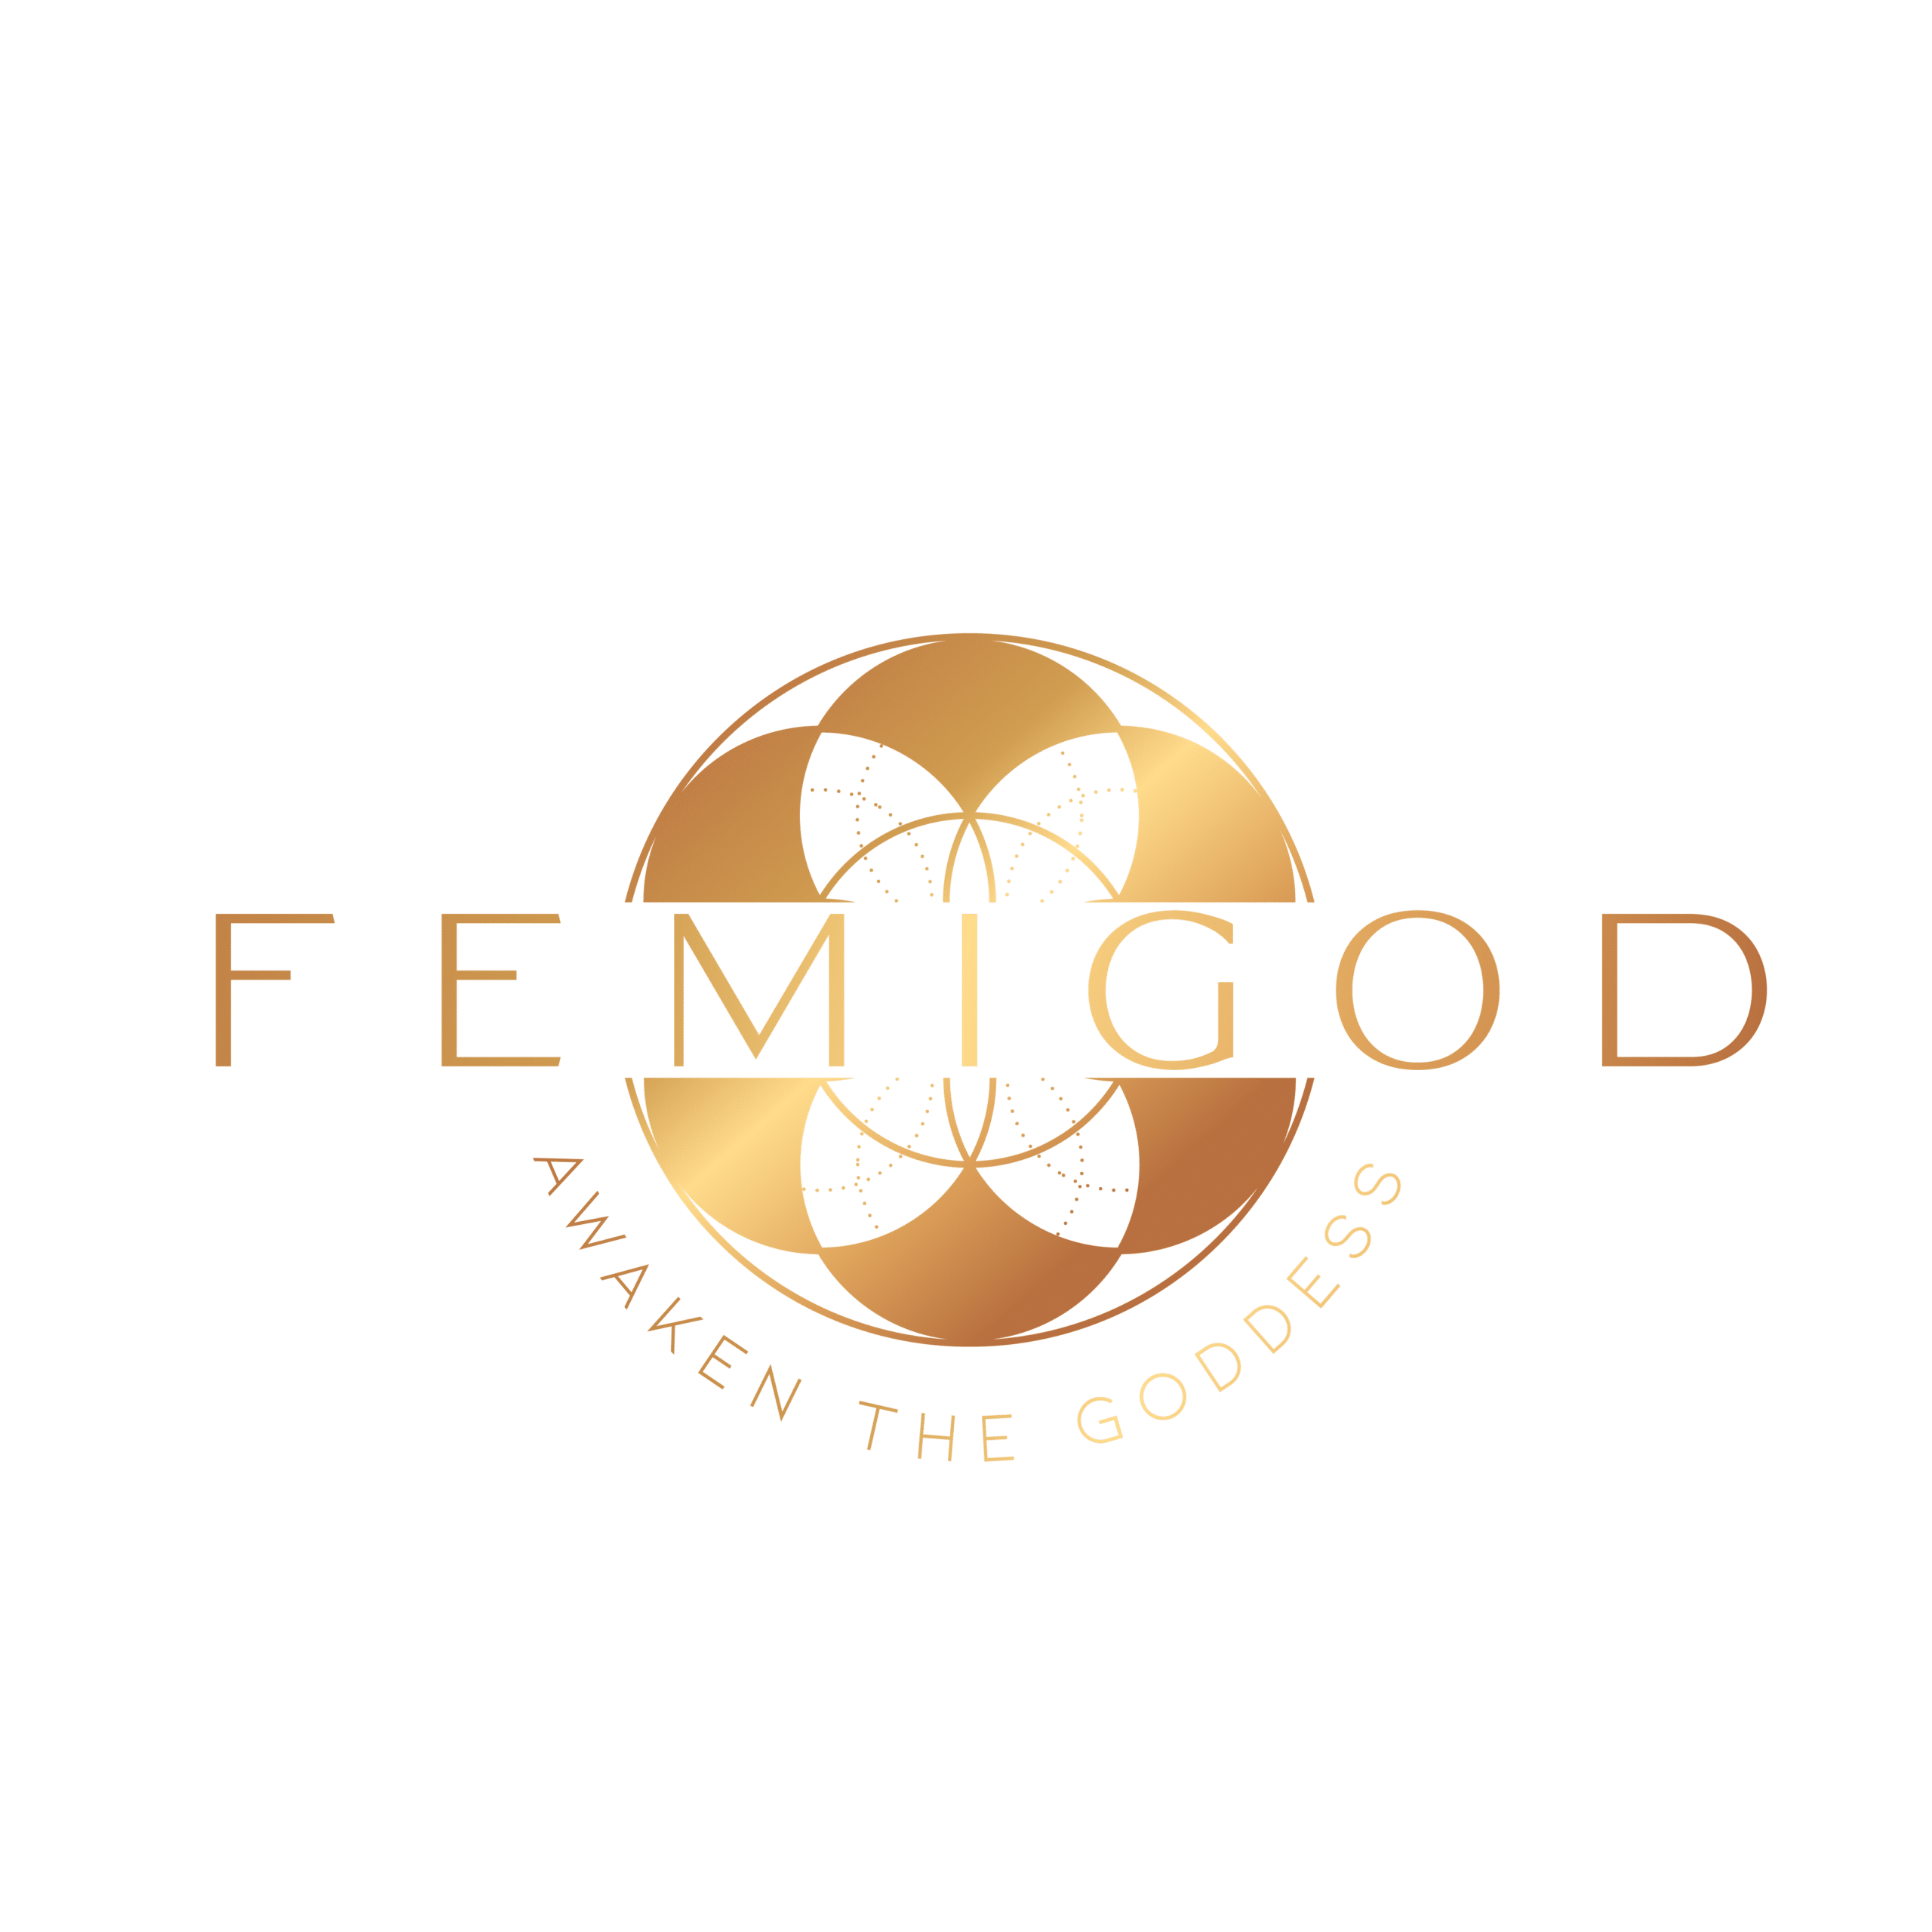 The logo for femigod awaken the goddess.